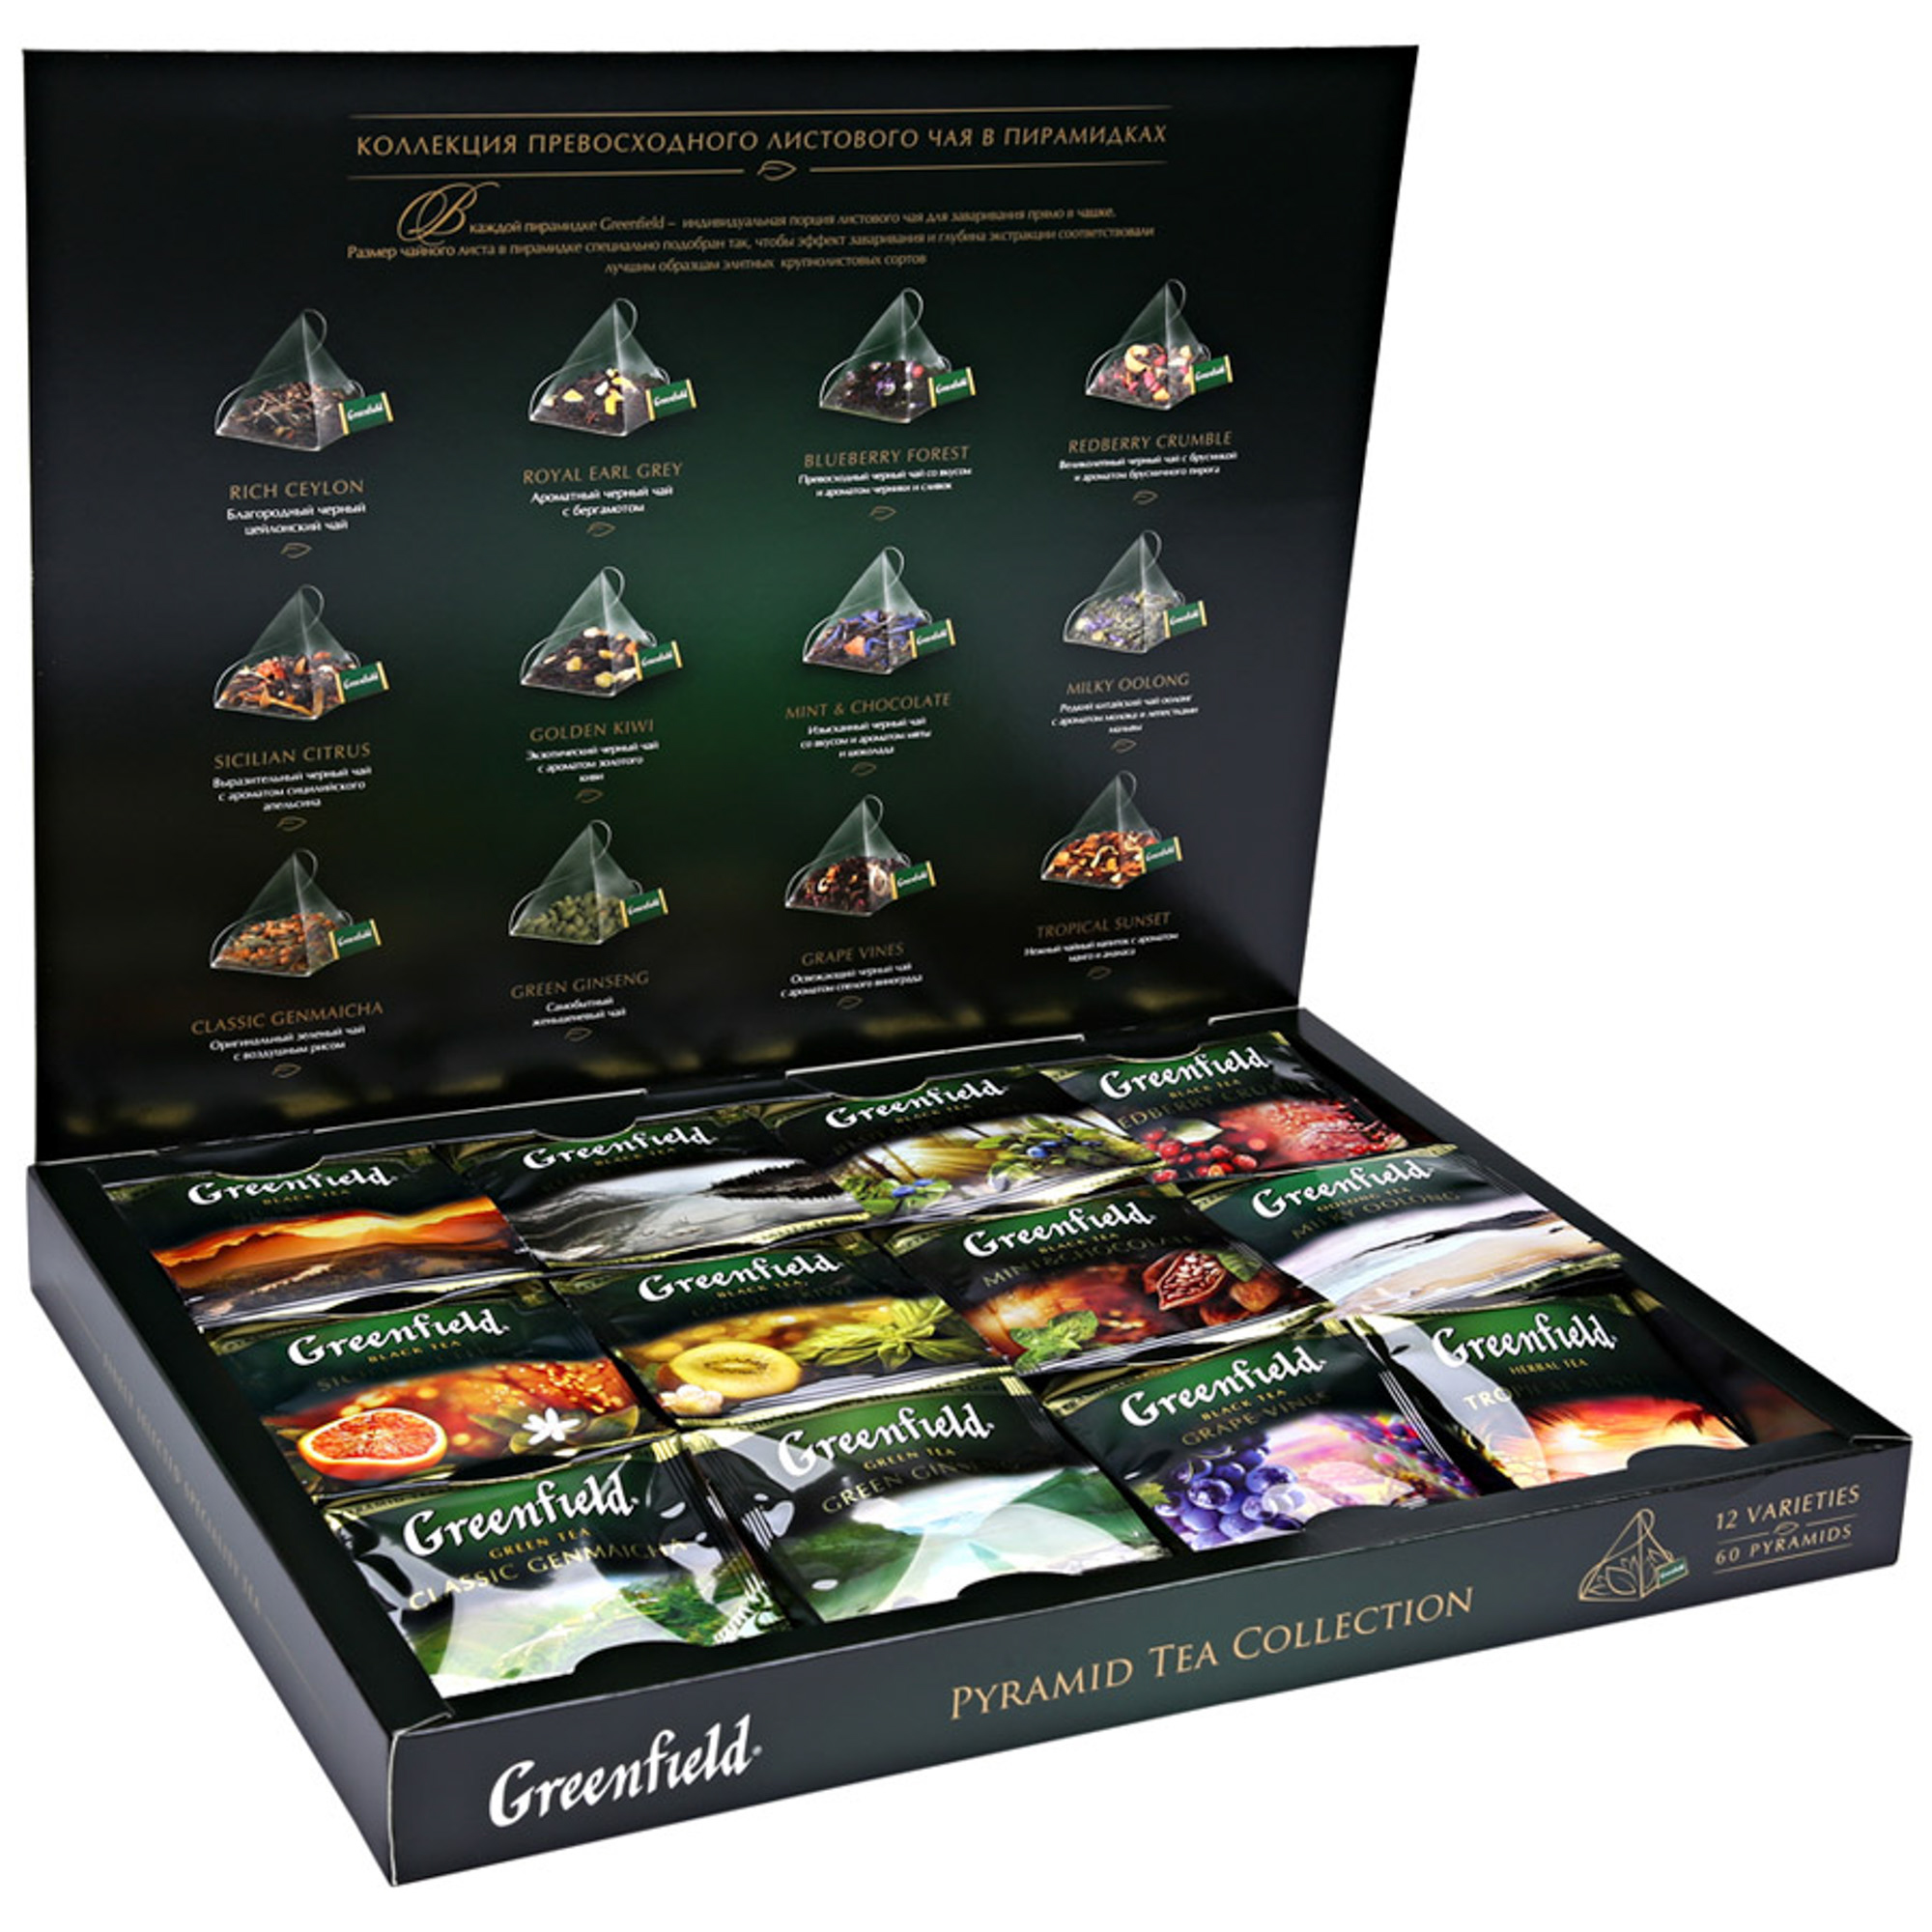 Greenfield collection. Гринфилд подарочный в пирамидках 12 видов. Набор чаев Гринфилд 30. Гринфилд набор 12 вкусов. Greenfield чай подарочный набор 30varieyes.